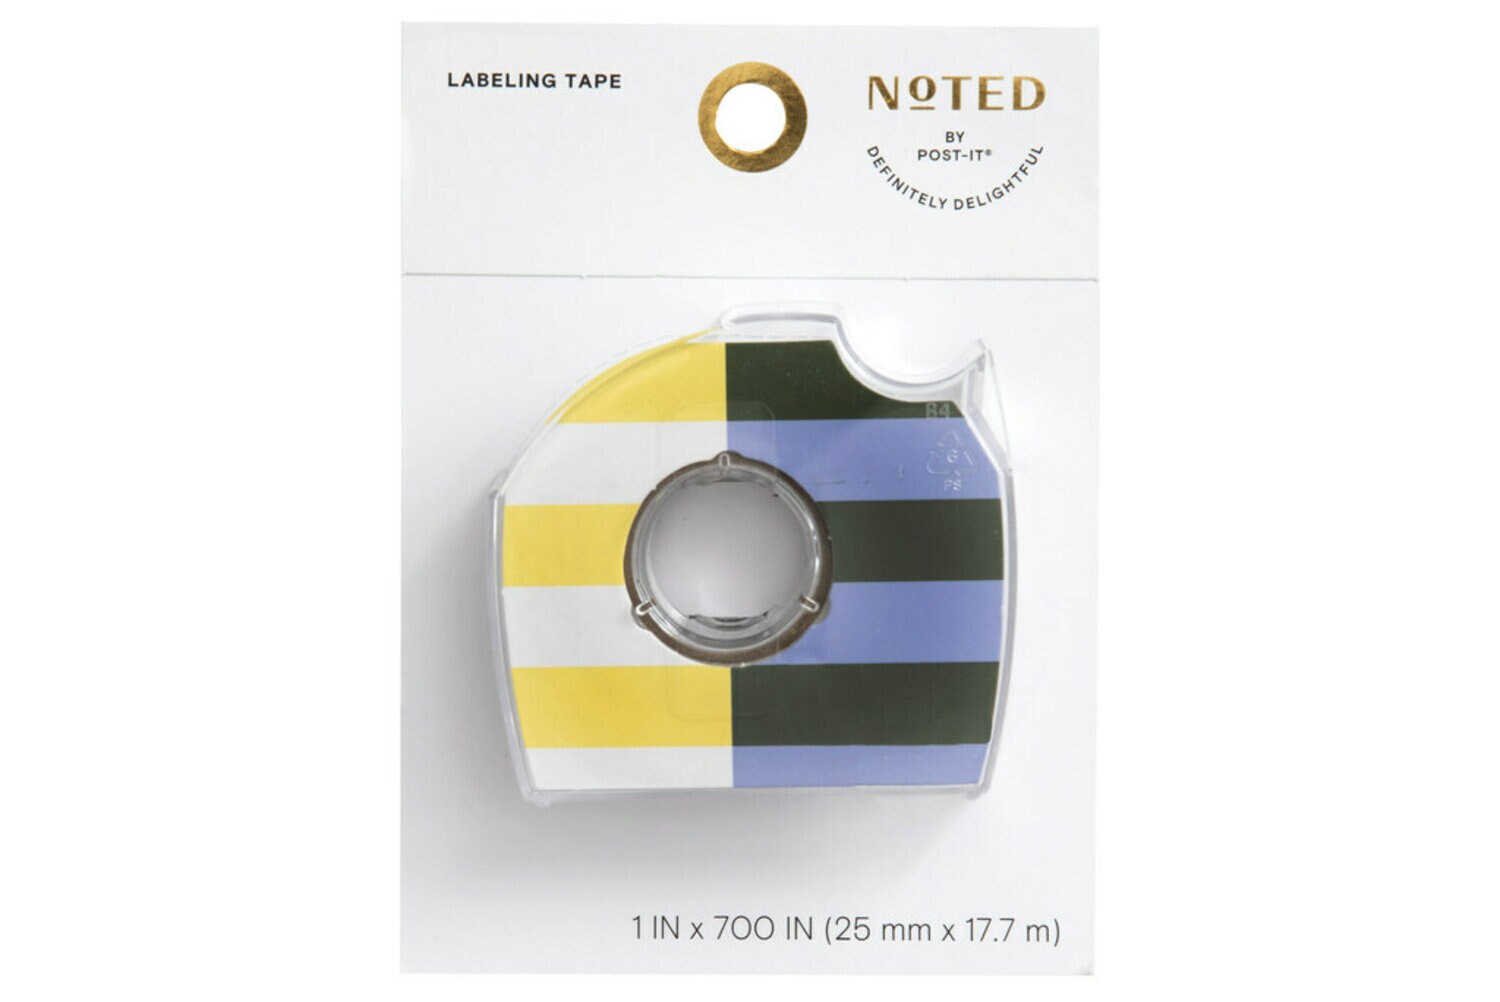 7100275974 - Post-it Labeling Tape NTD6-LTAPE1, 1 in x 700 in (25.4 mm x 17.7 m)